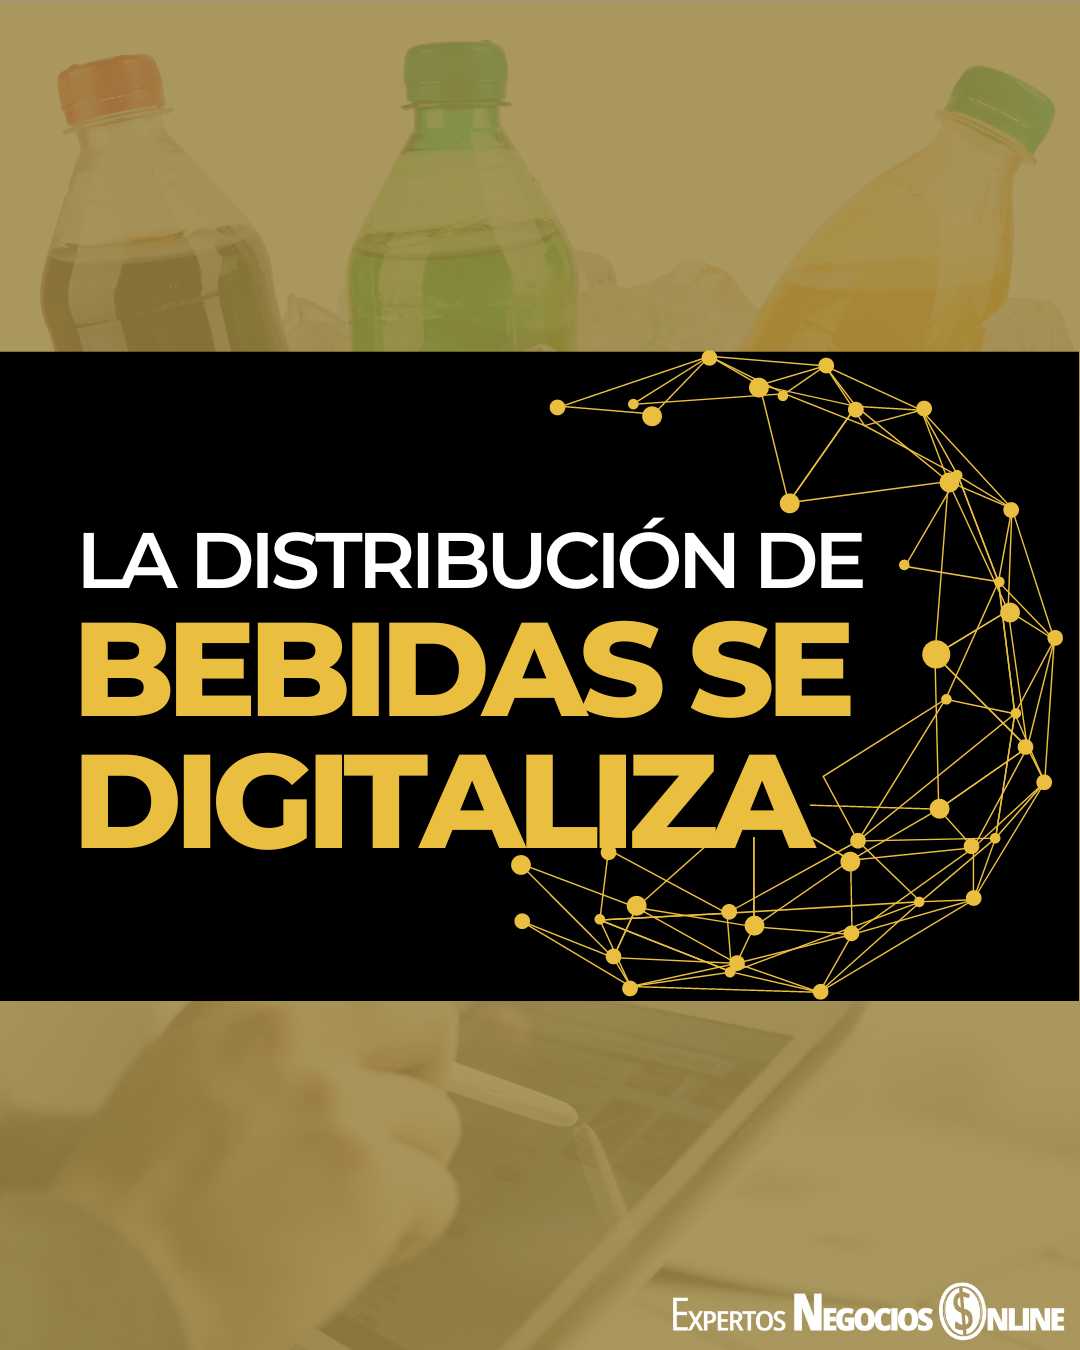 La distribución de bebidas se digitaliza